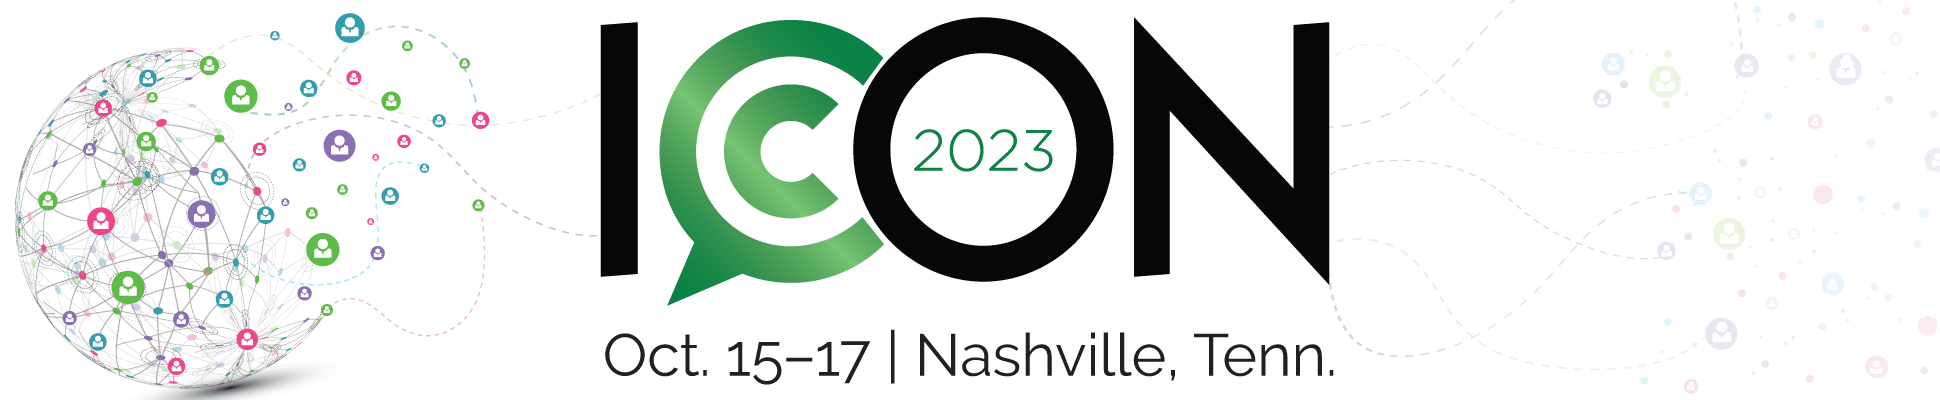 ICON 2023 PRSA Conference